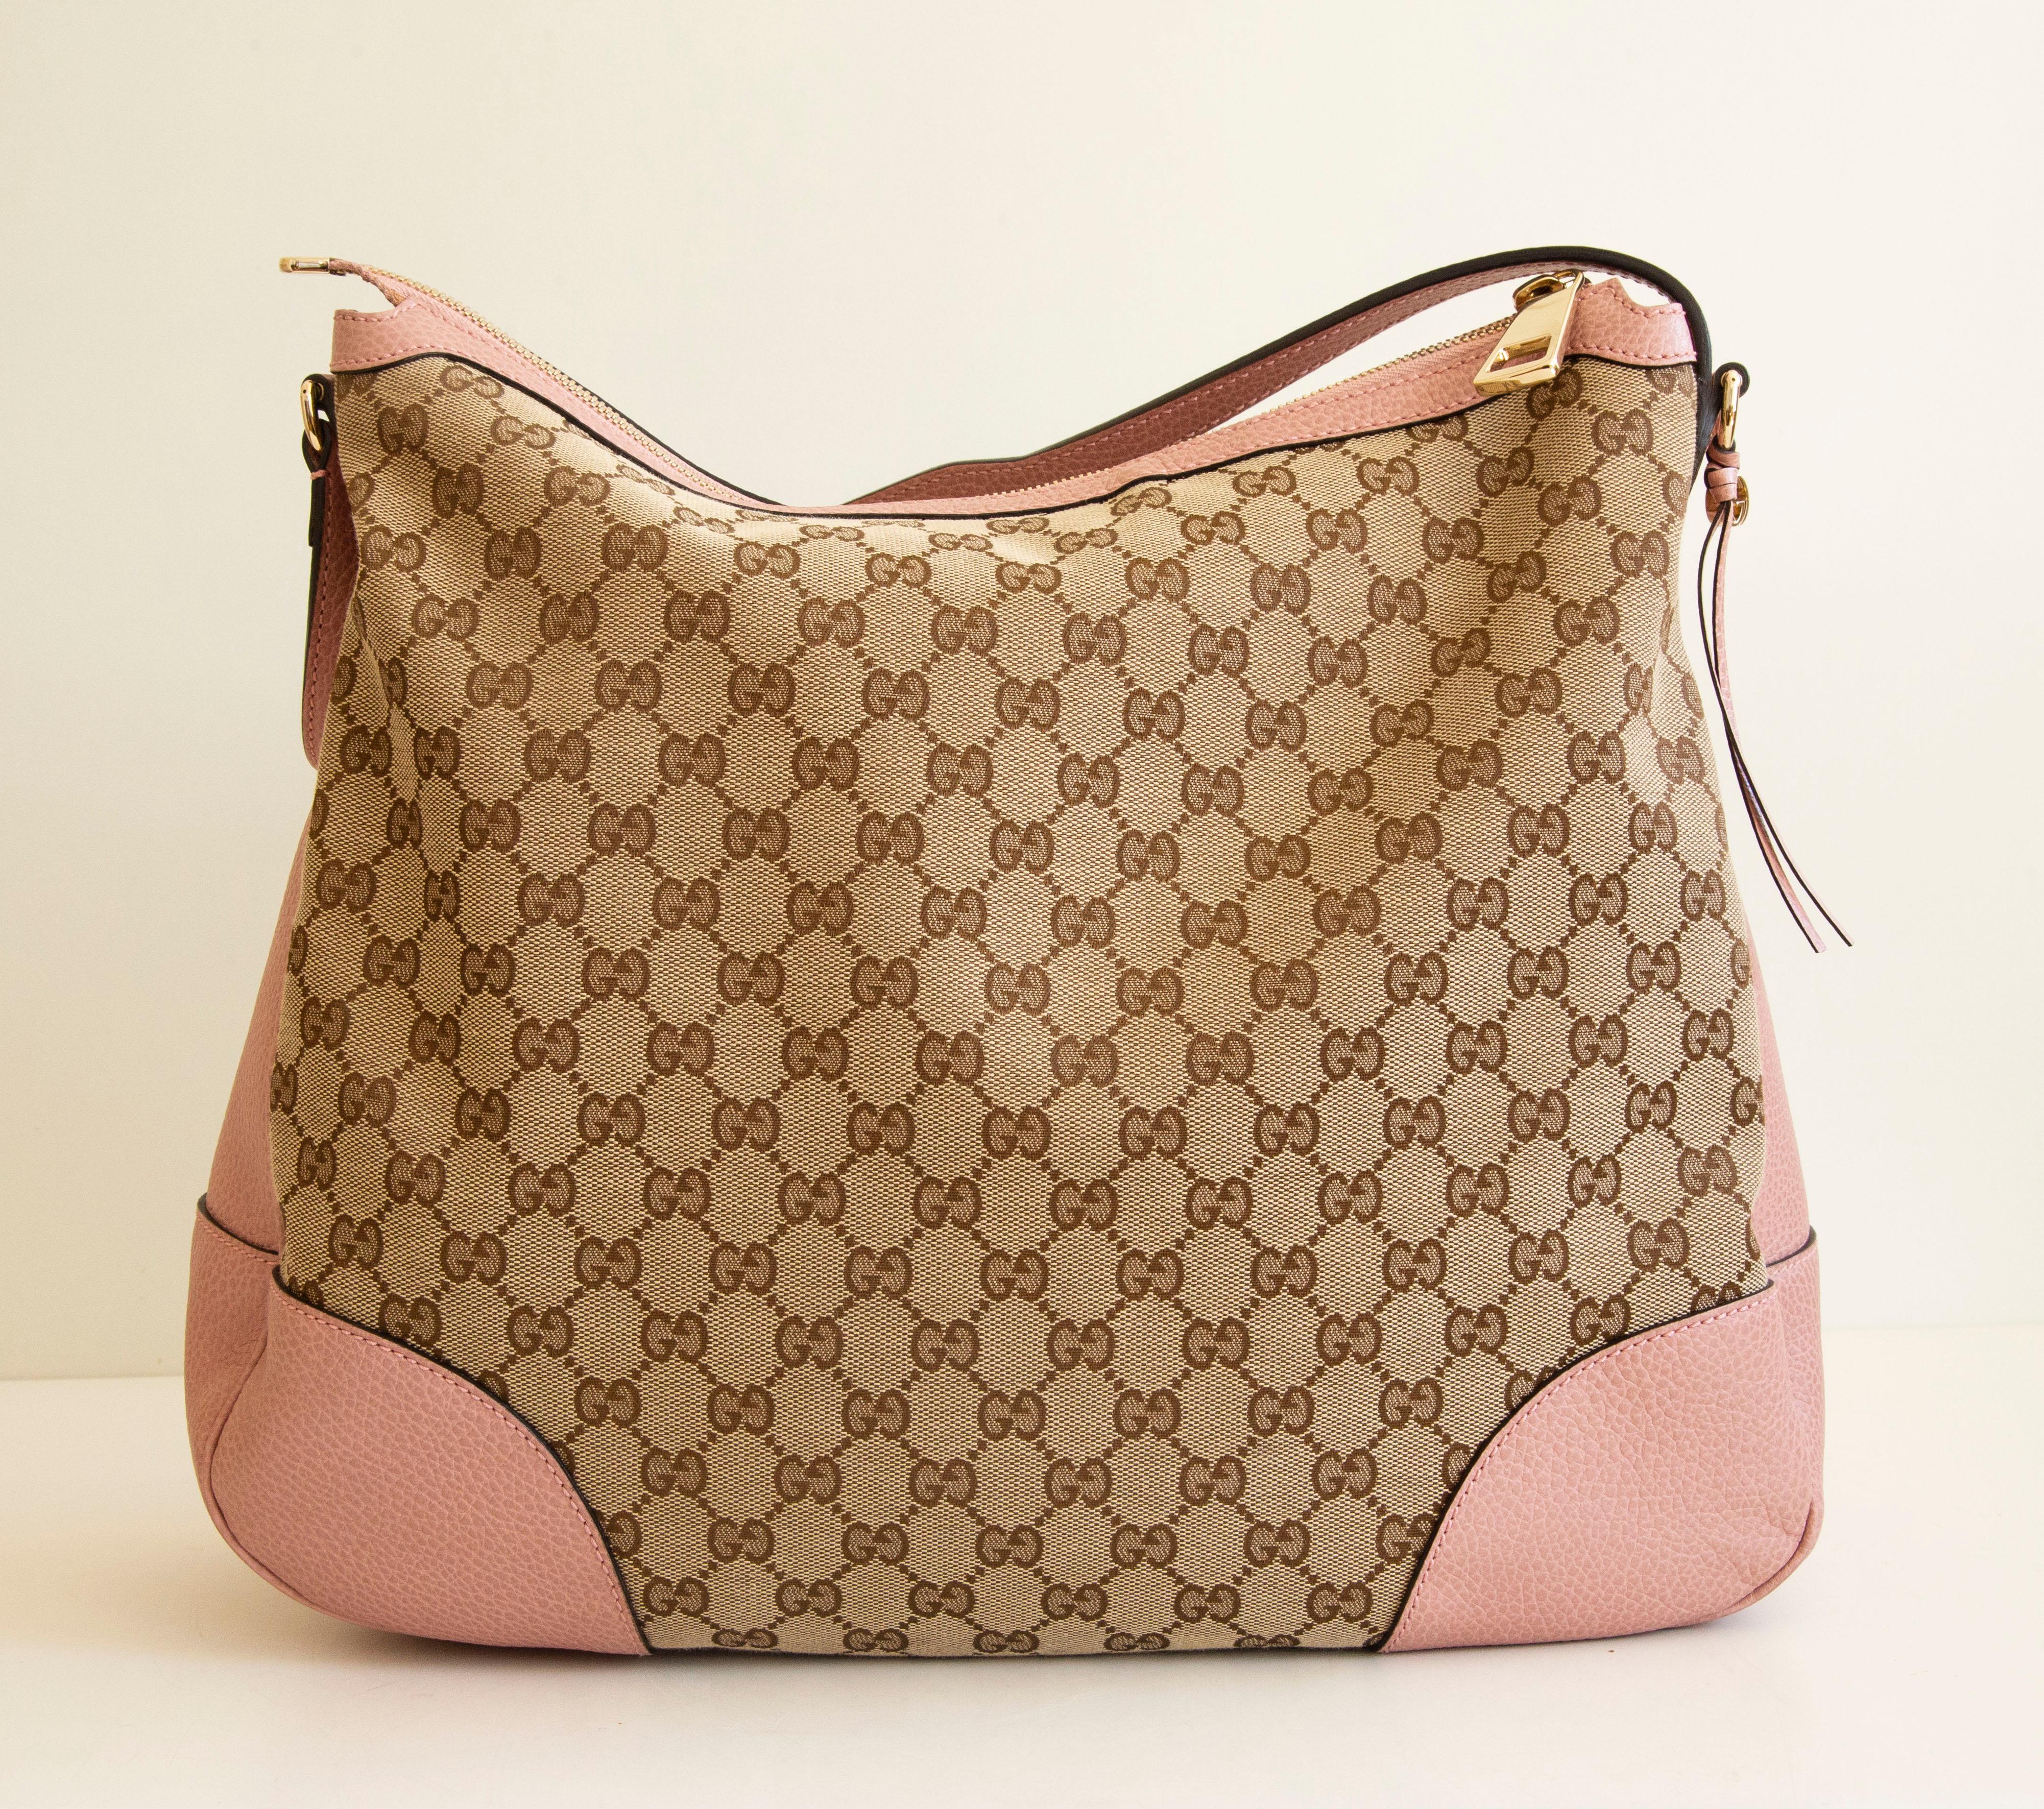 Un authentique sac à bandoulière/hobo bag de Gucci Bree. Le sac présente un extérieur en toile GG, des garnitures en cuir rose et des ferrures de couleur or clair. L'intérieur est doublé de tissu beige et comporte trois poches latérales, une poche